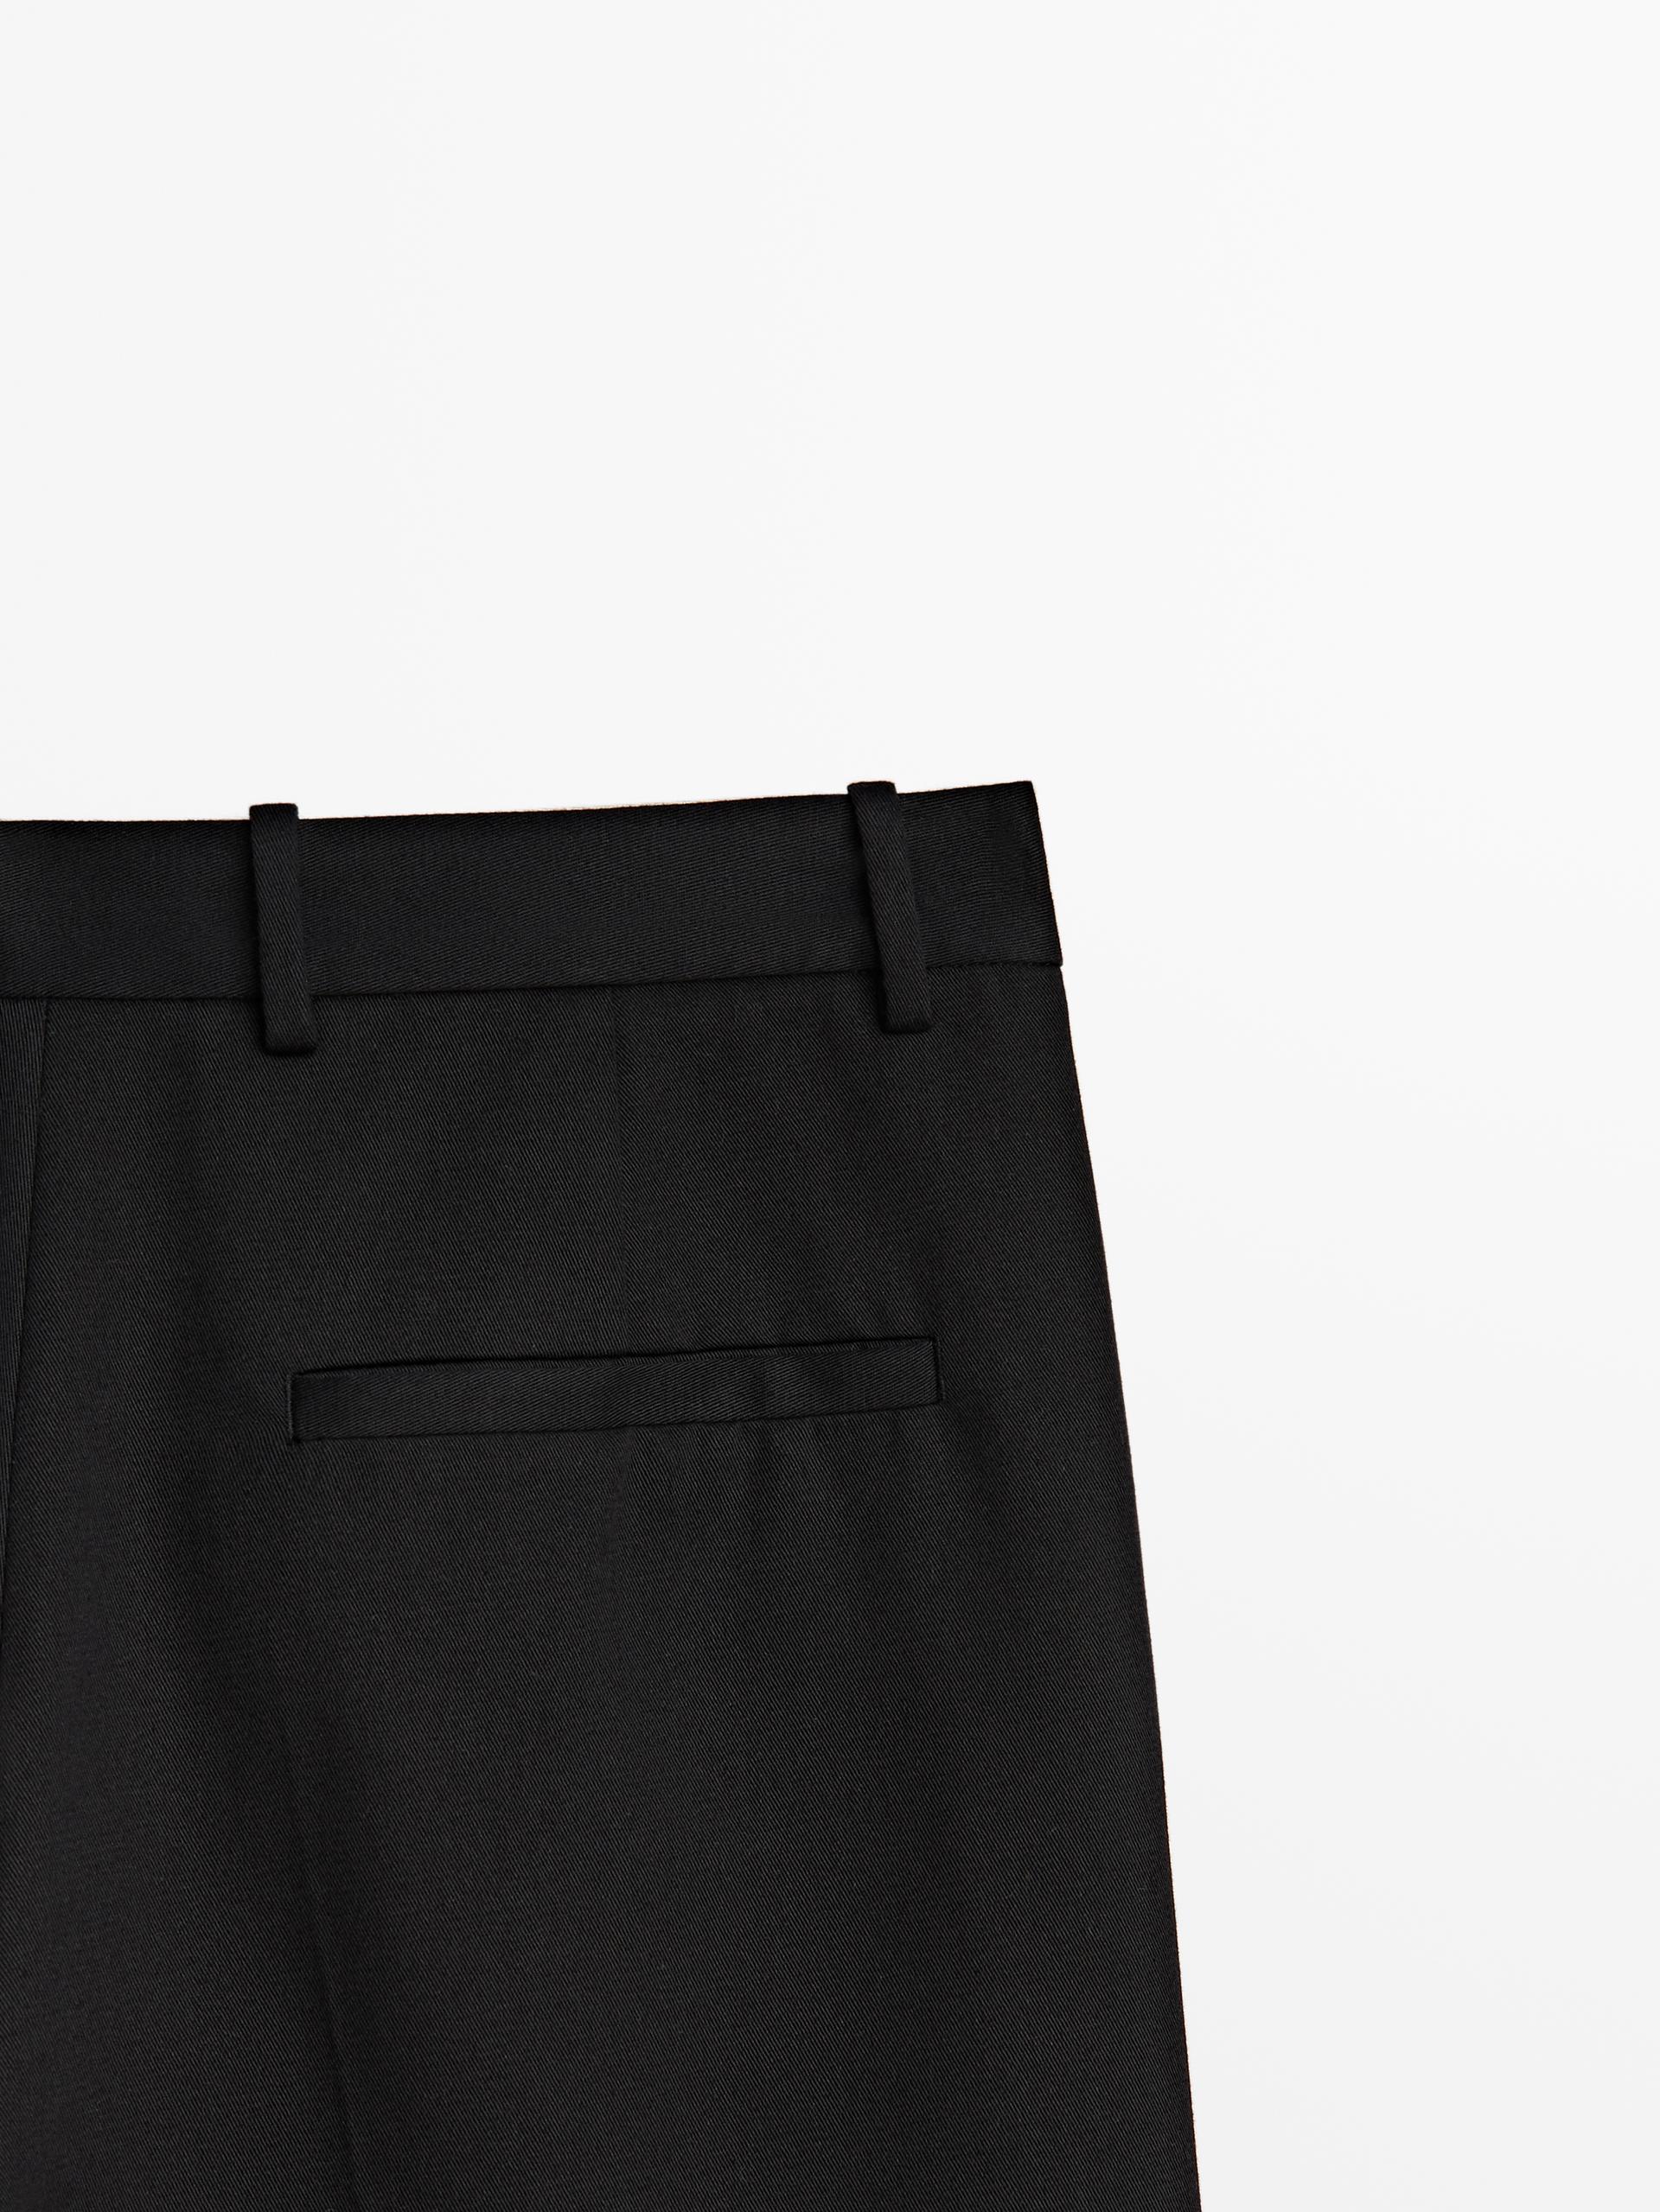 Pantalón negro full length pinzas - Negro  ZARA Estados Unidos de América  / United States